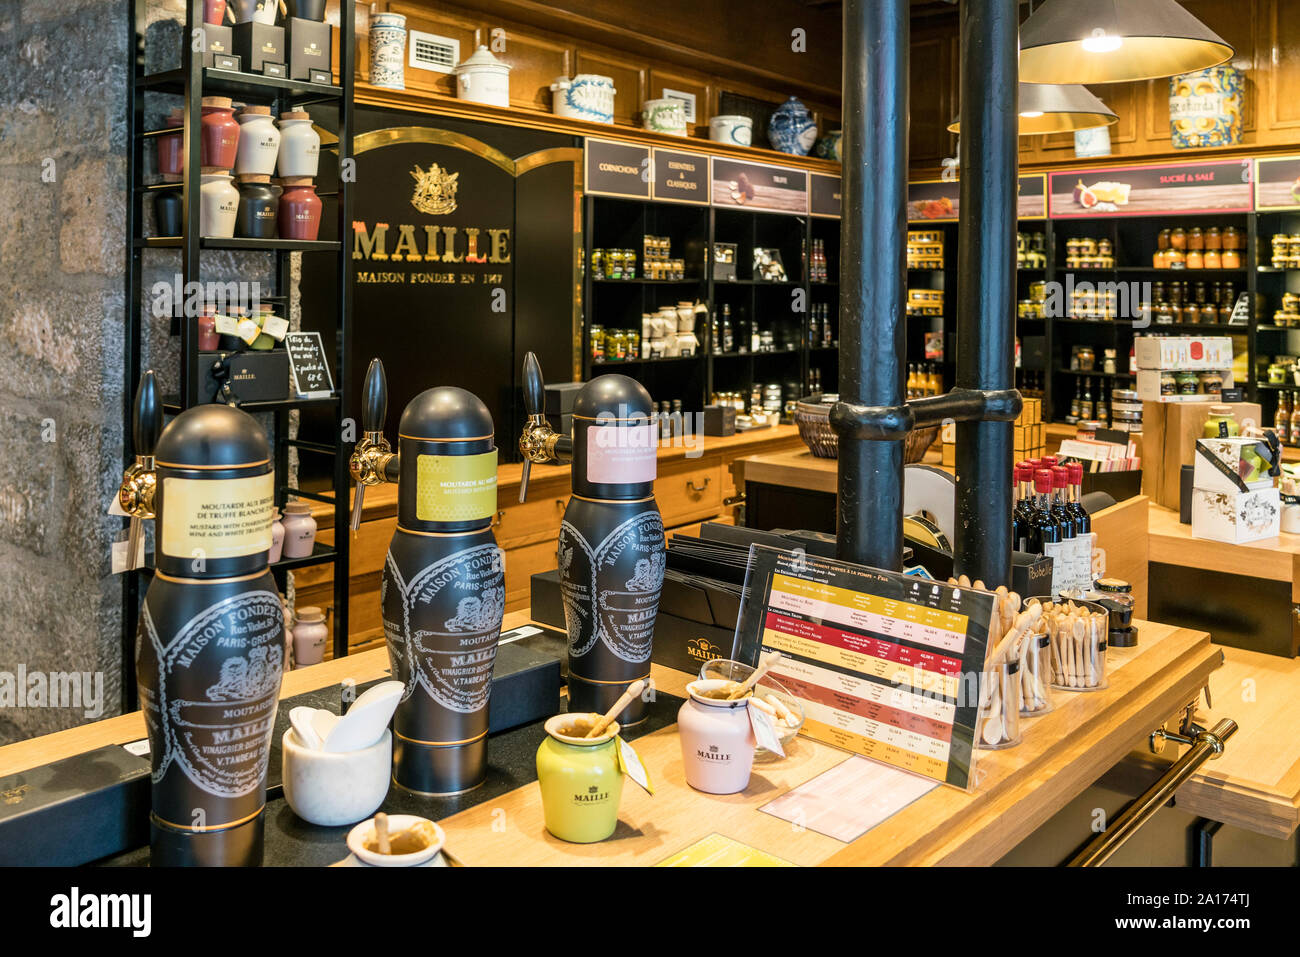 Maille mustard shop, Dijon, Côte-d'Or departement, Bourgogne, France Banque D'Images